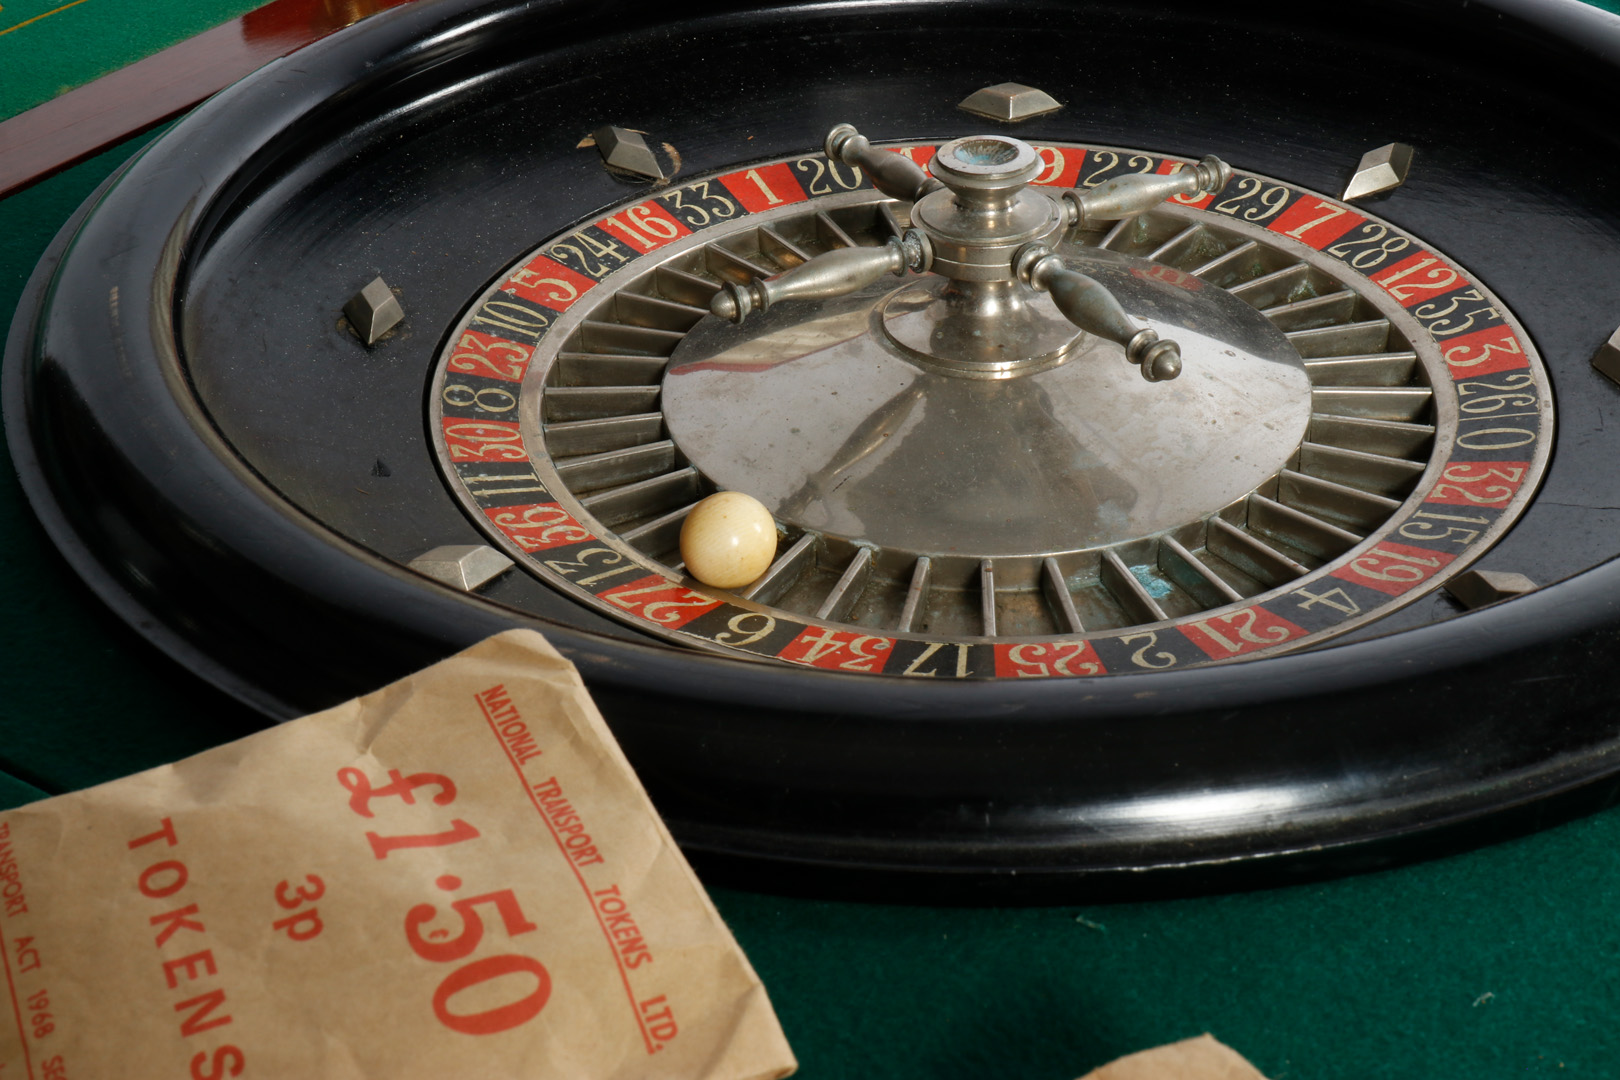 Großer Mahagoni-Spieltisch, aufklappbar, für Roulette-Spiel, grün befilzt, mit Drehteller, Kugel, - Image 4 of 7